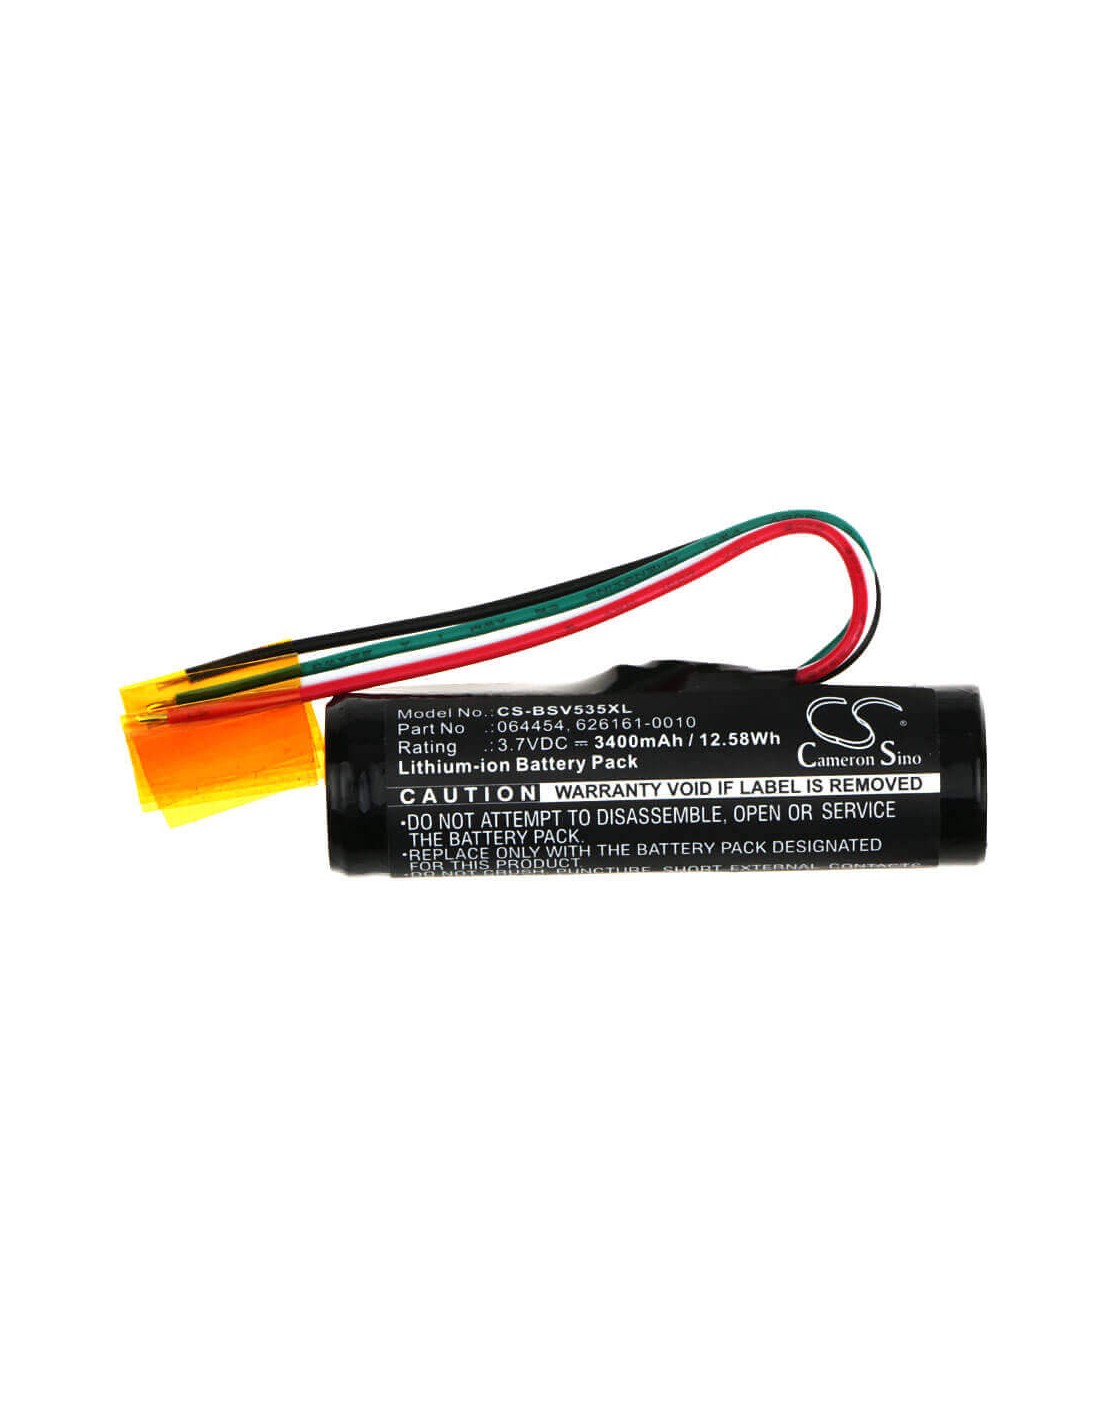 Battery for Bose V35, 535, 525ii 3.7V, 3400mAh - 12.58Wh